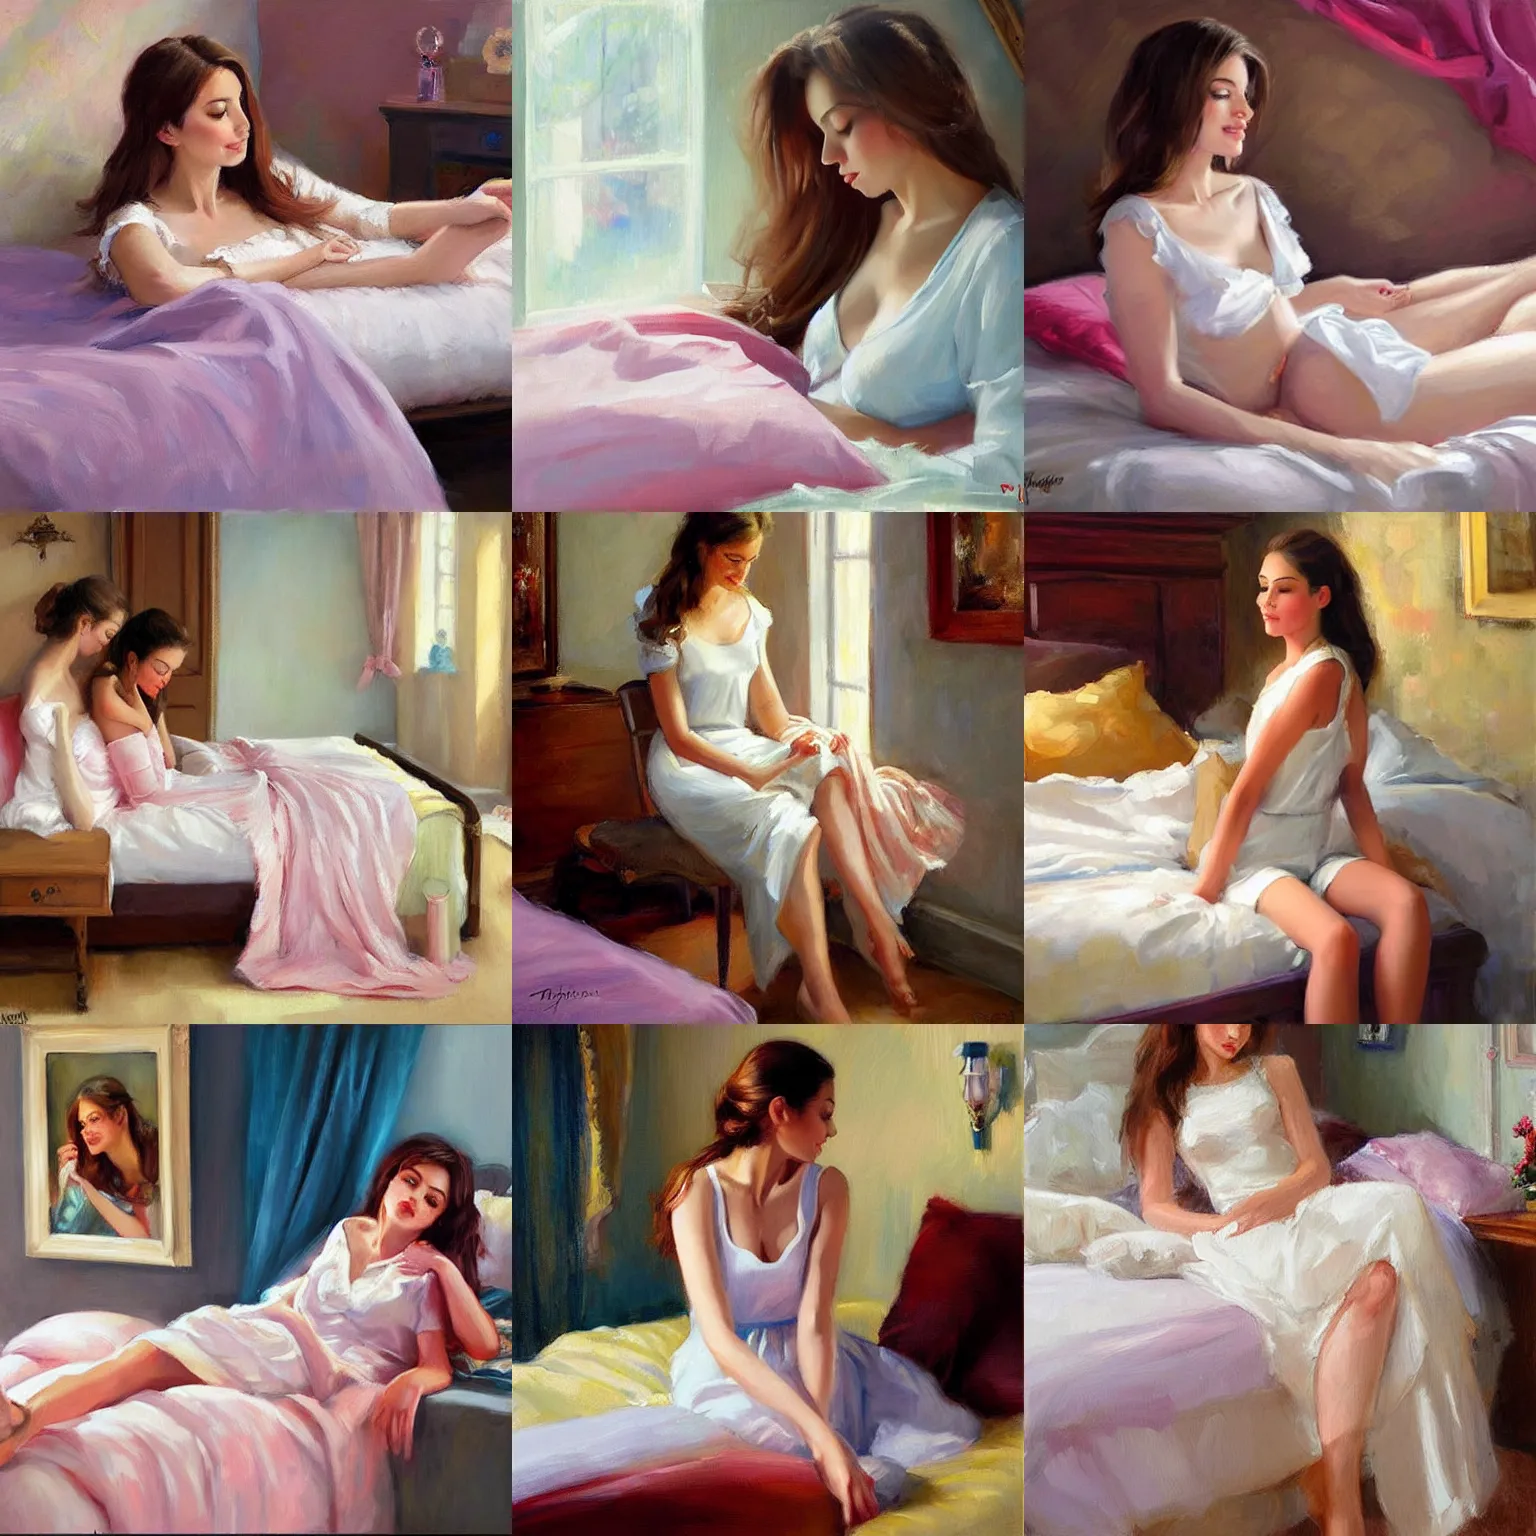 Prompt: brunette blushing in bedroom, painting by Vladimir Volegov